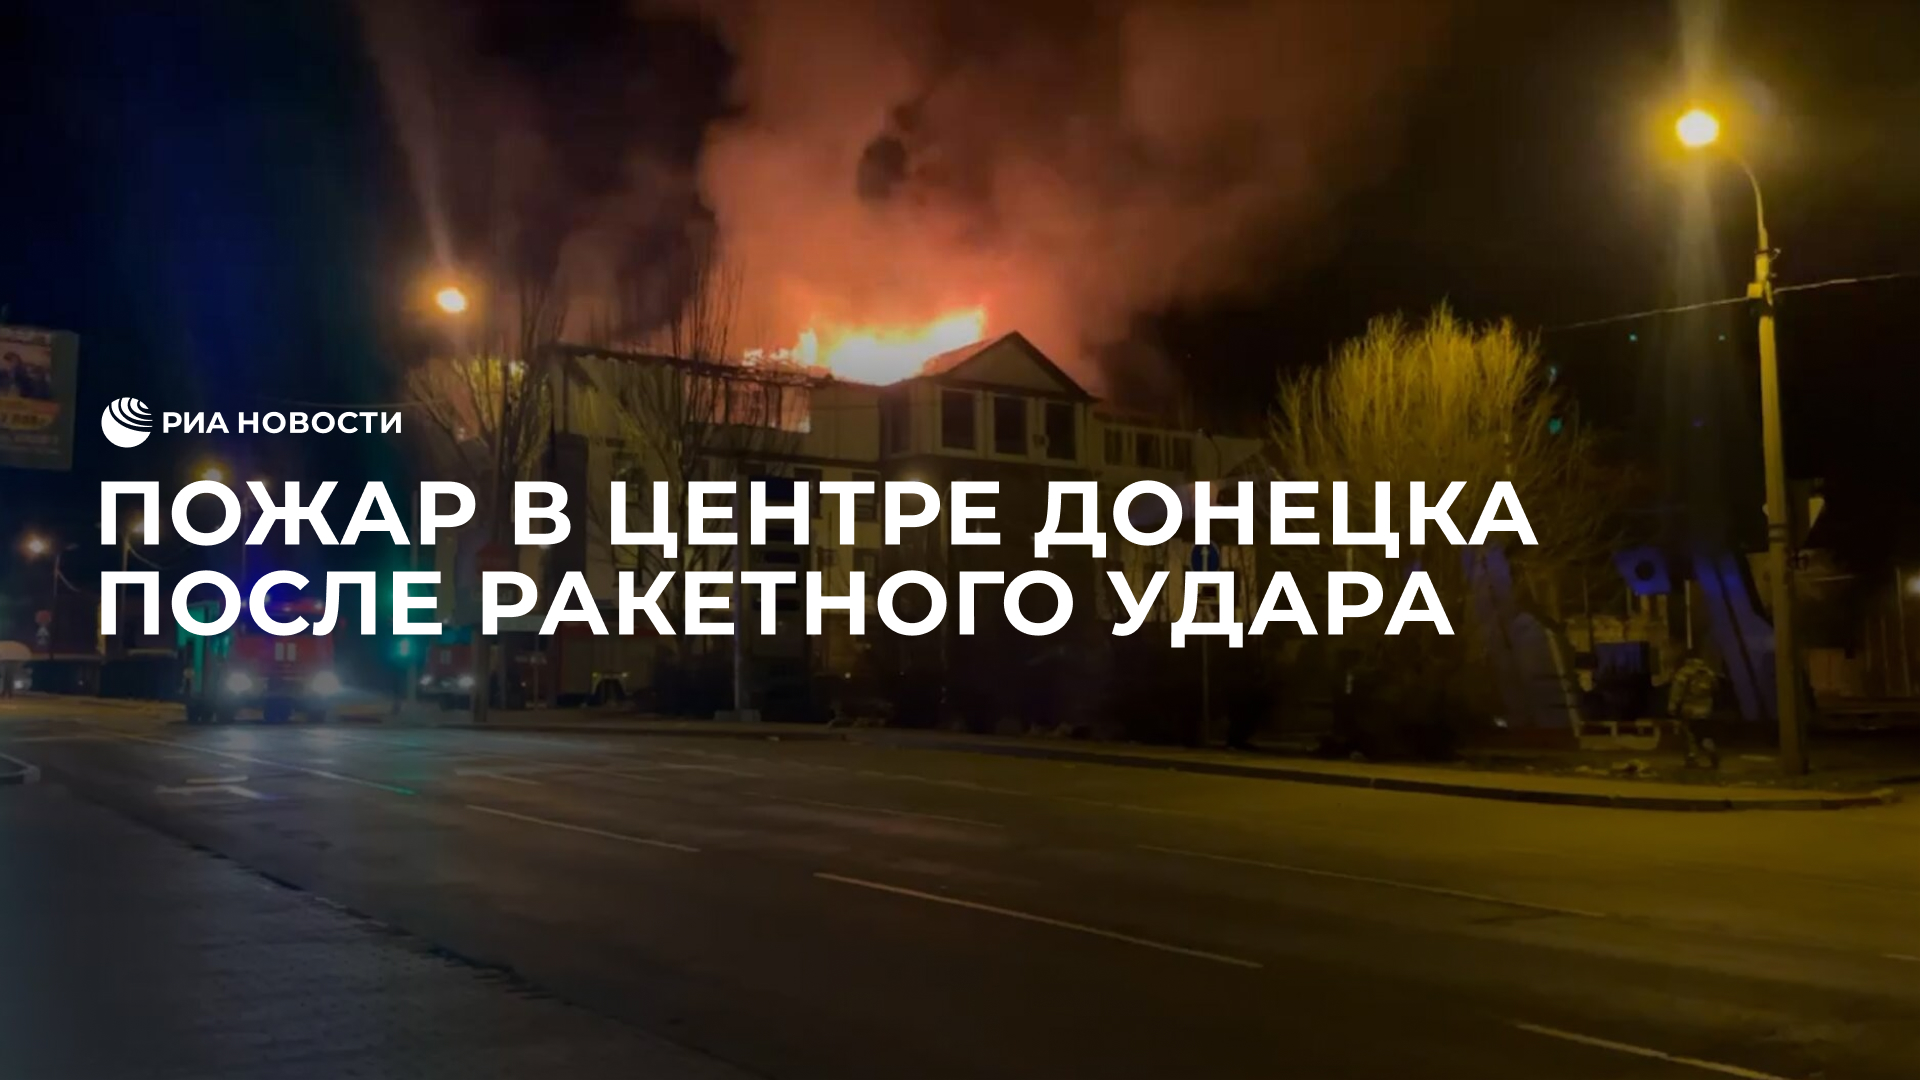 Пожар в центре Донецка после ракетного удара